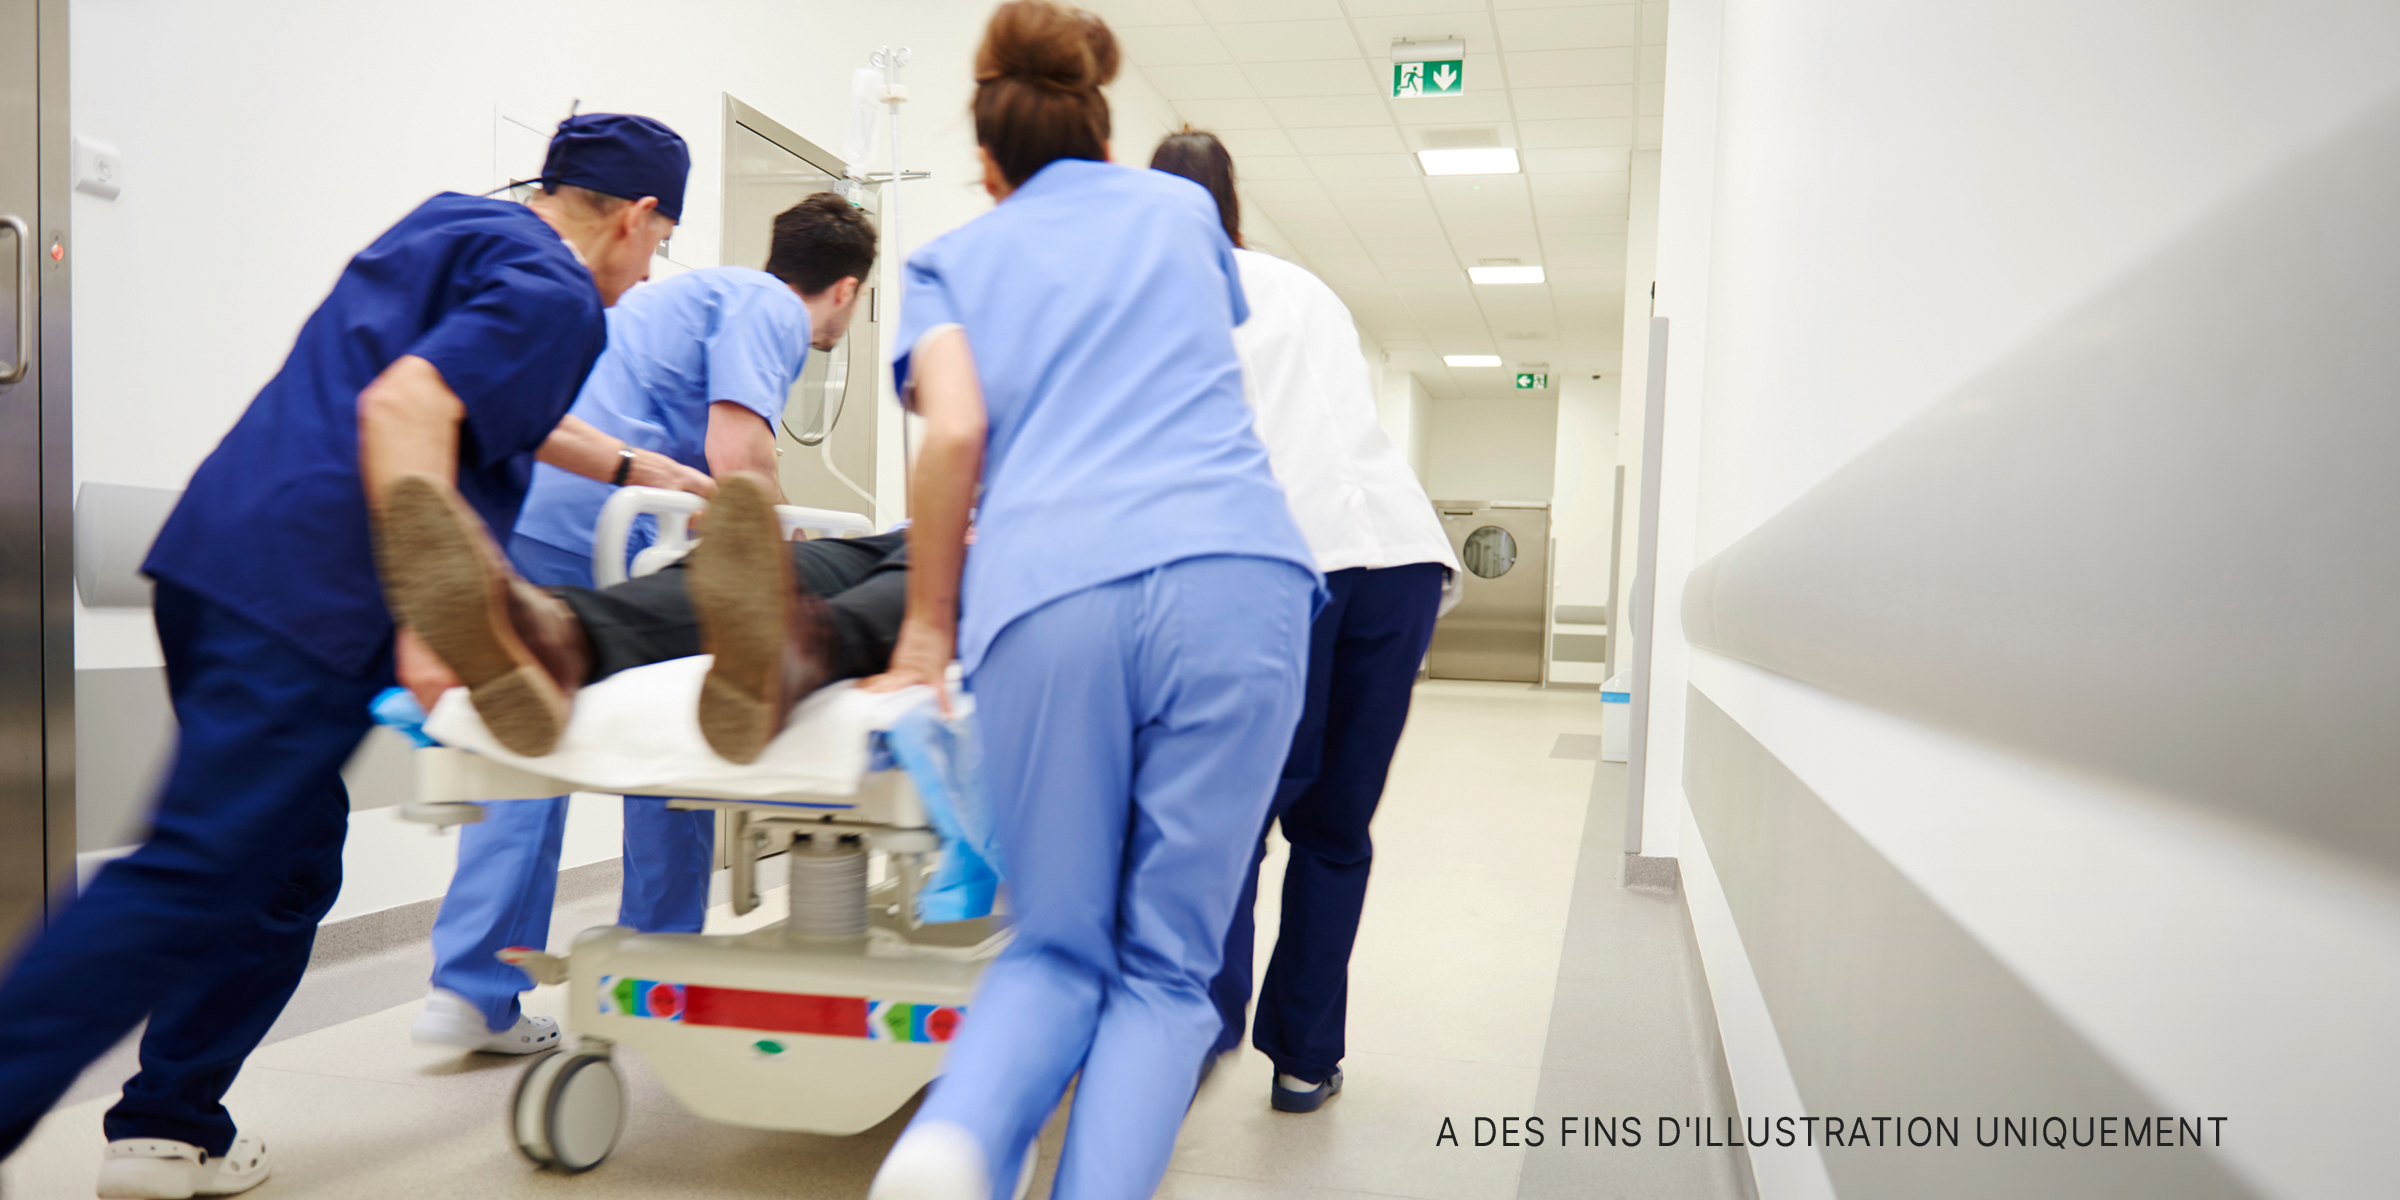 Les ambulanciers pressent un patient sur un brancard | Source : Shutterstock